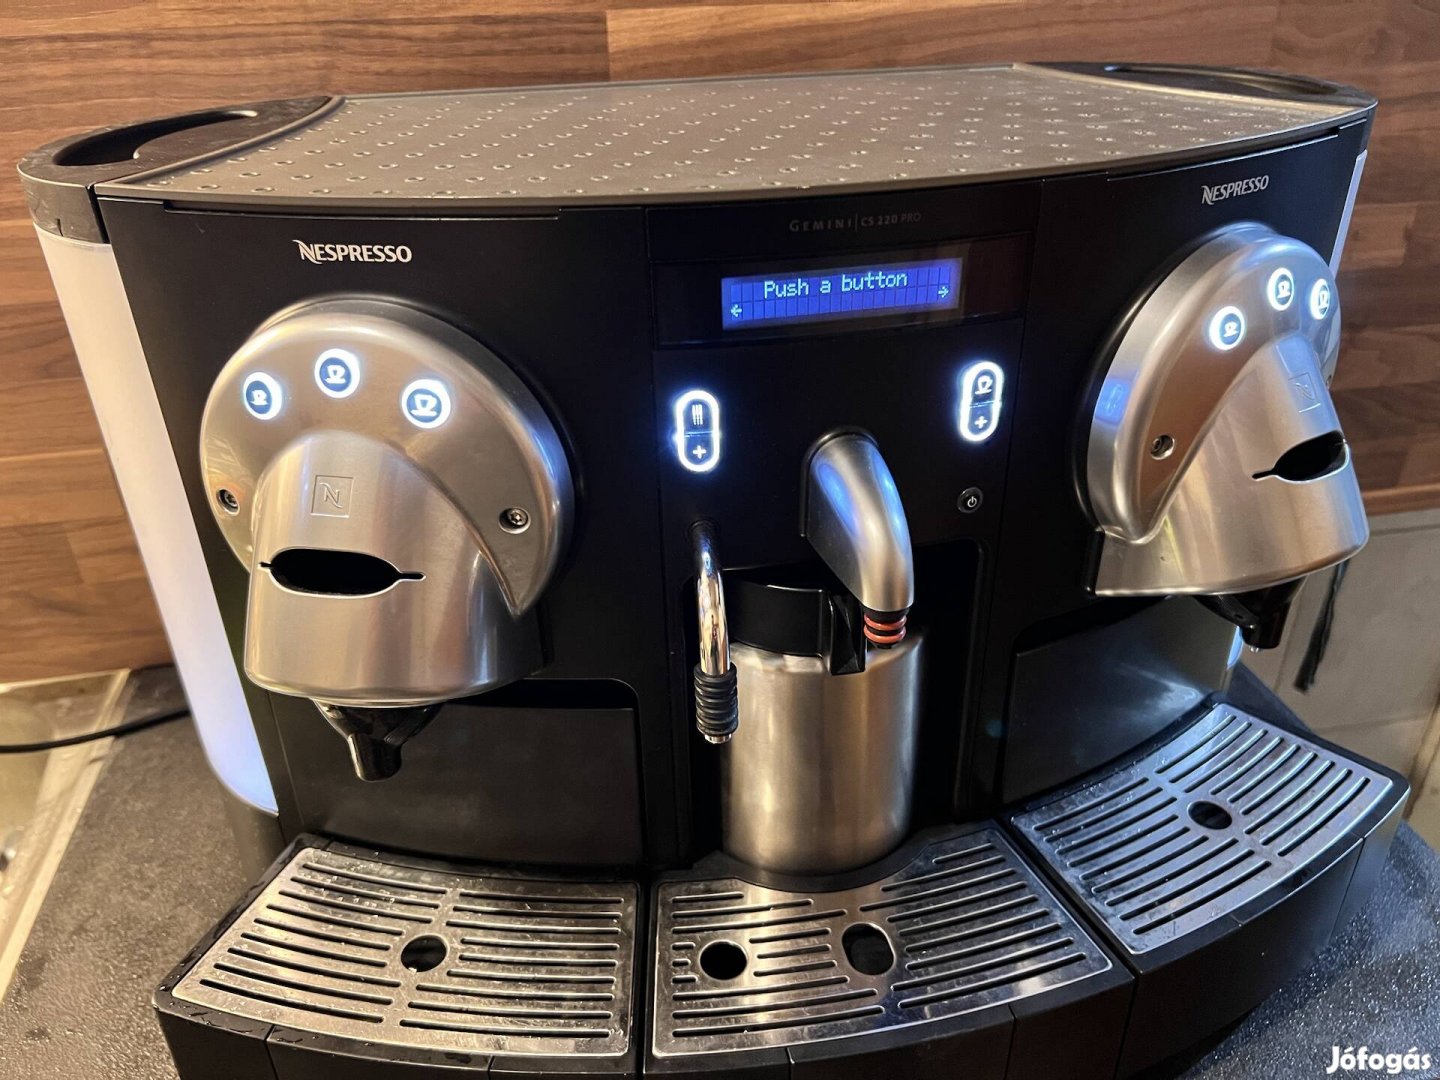 Nespresso Gemini Cs220 Pro